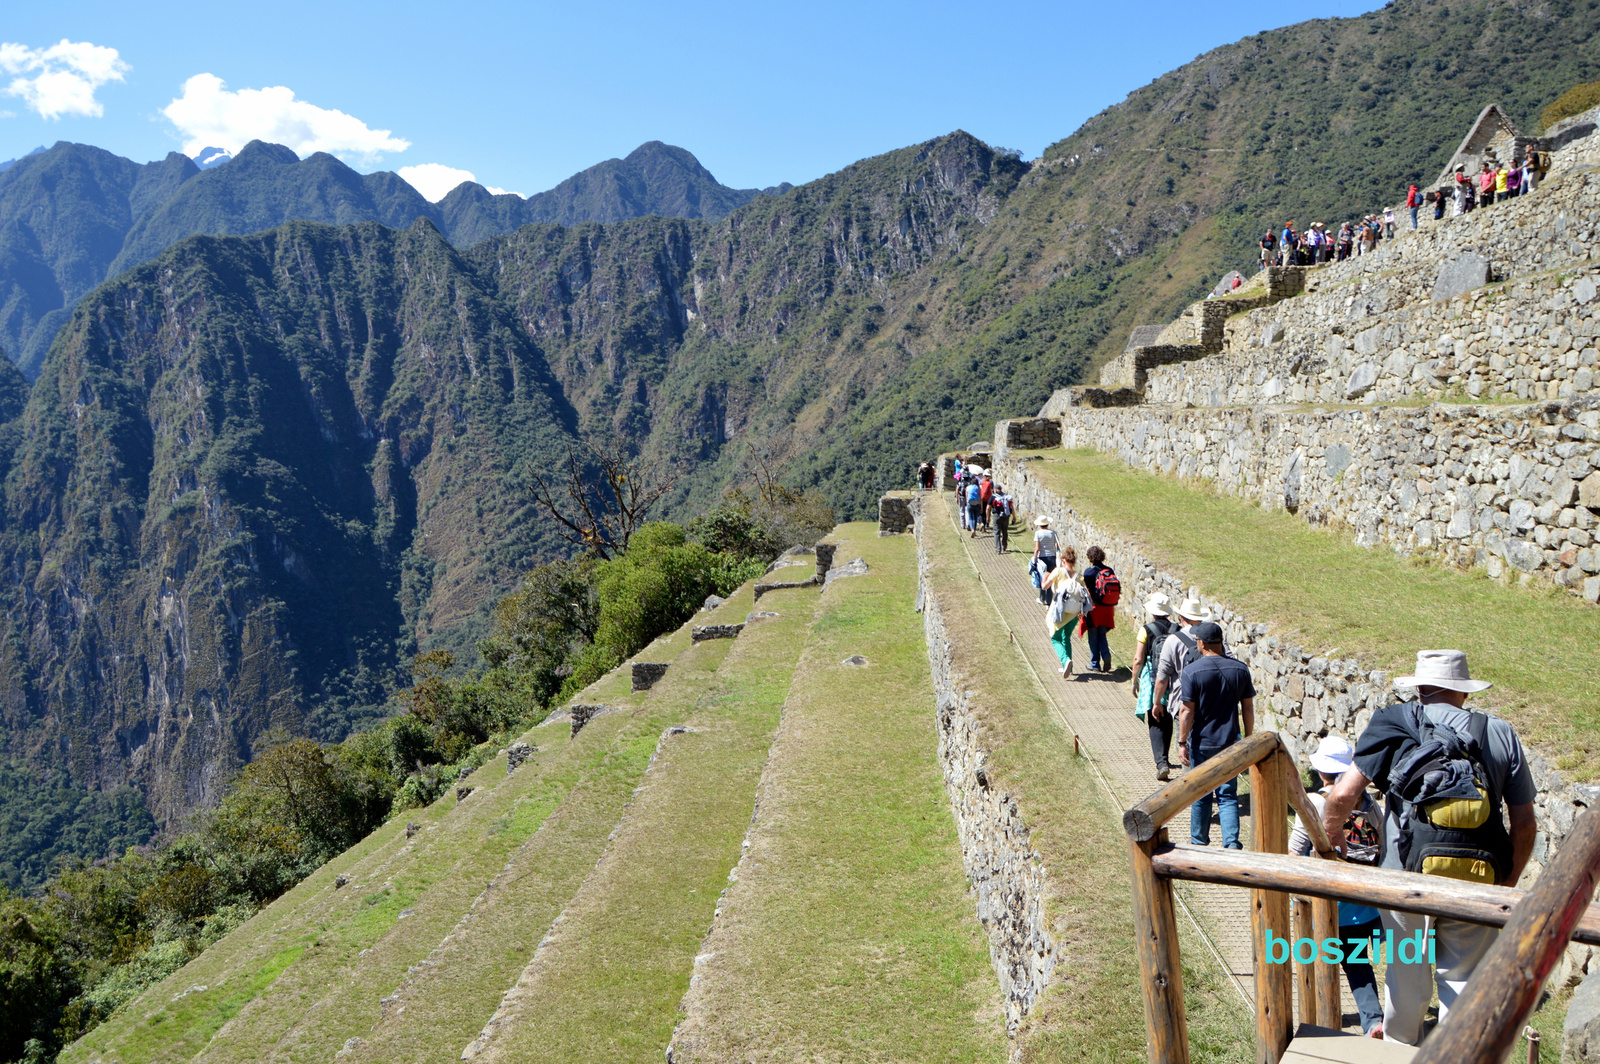 DSC 9866 Machu Picchu